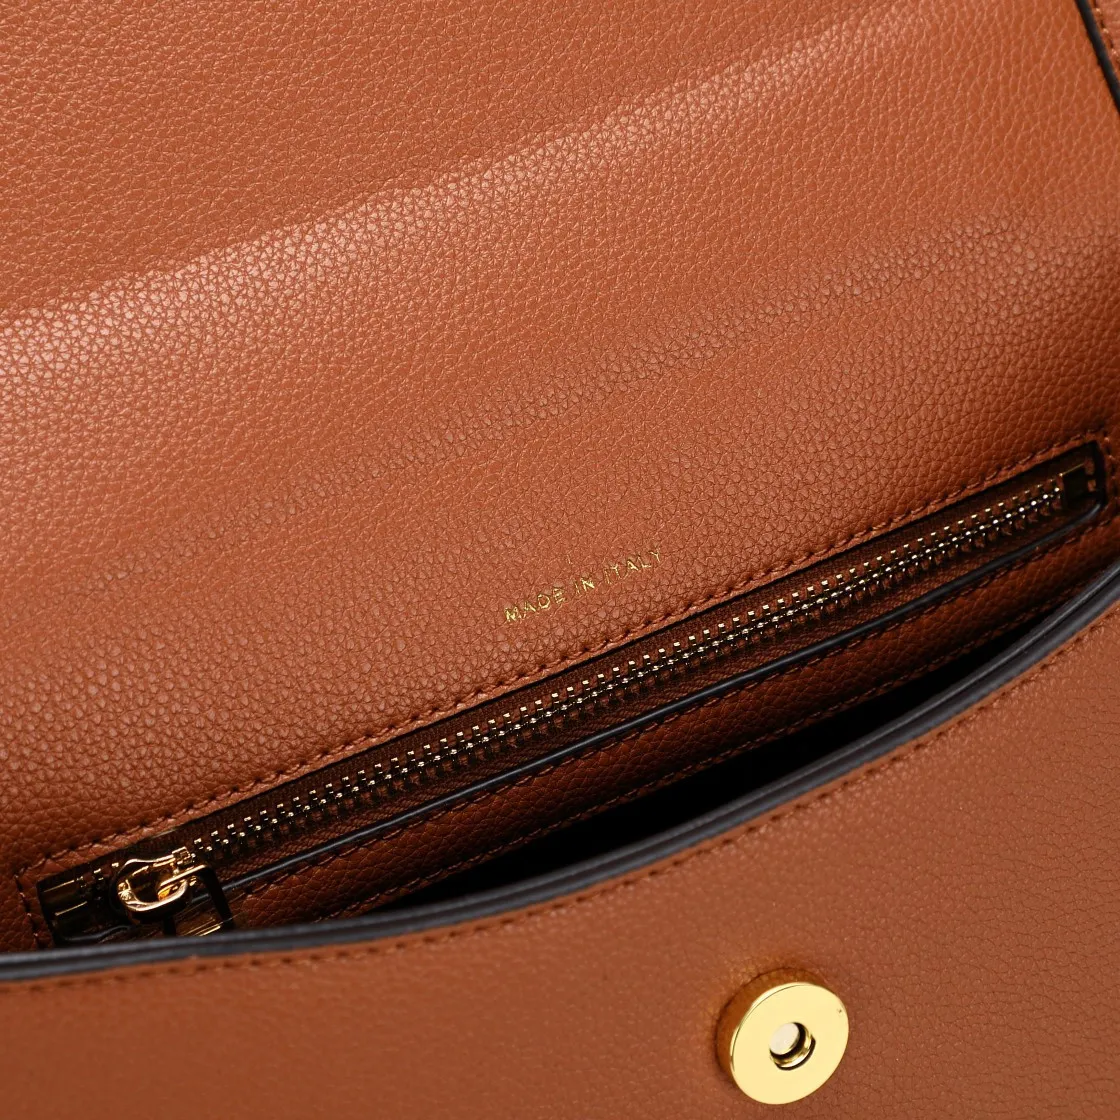 Marque Classic Designers TF Tara sacs en cuir plein sac à main modèle 5226 sacs à bandoulière Top qualité mode bandoulière avec boîte d'origine216O